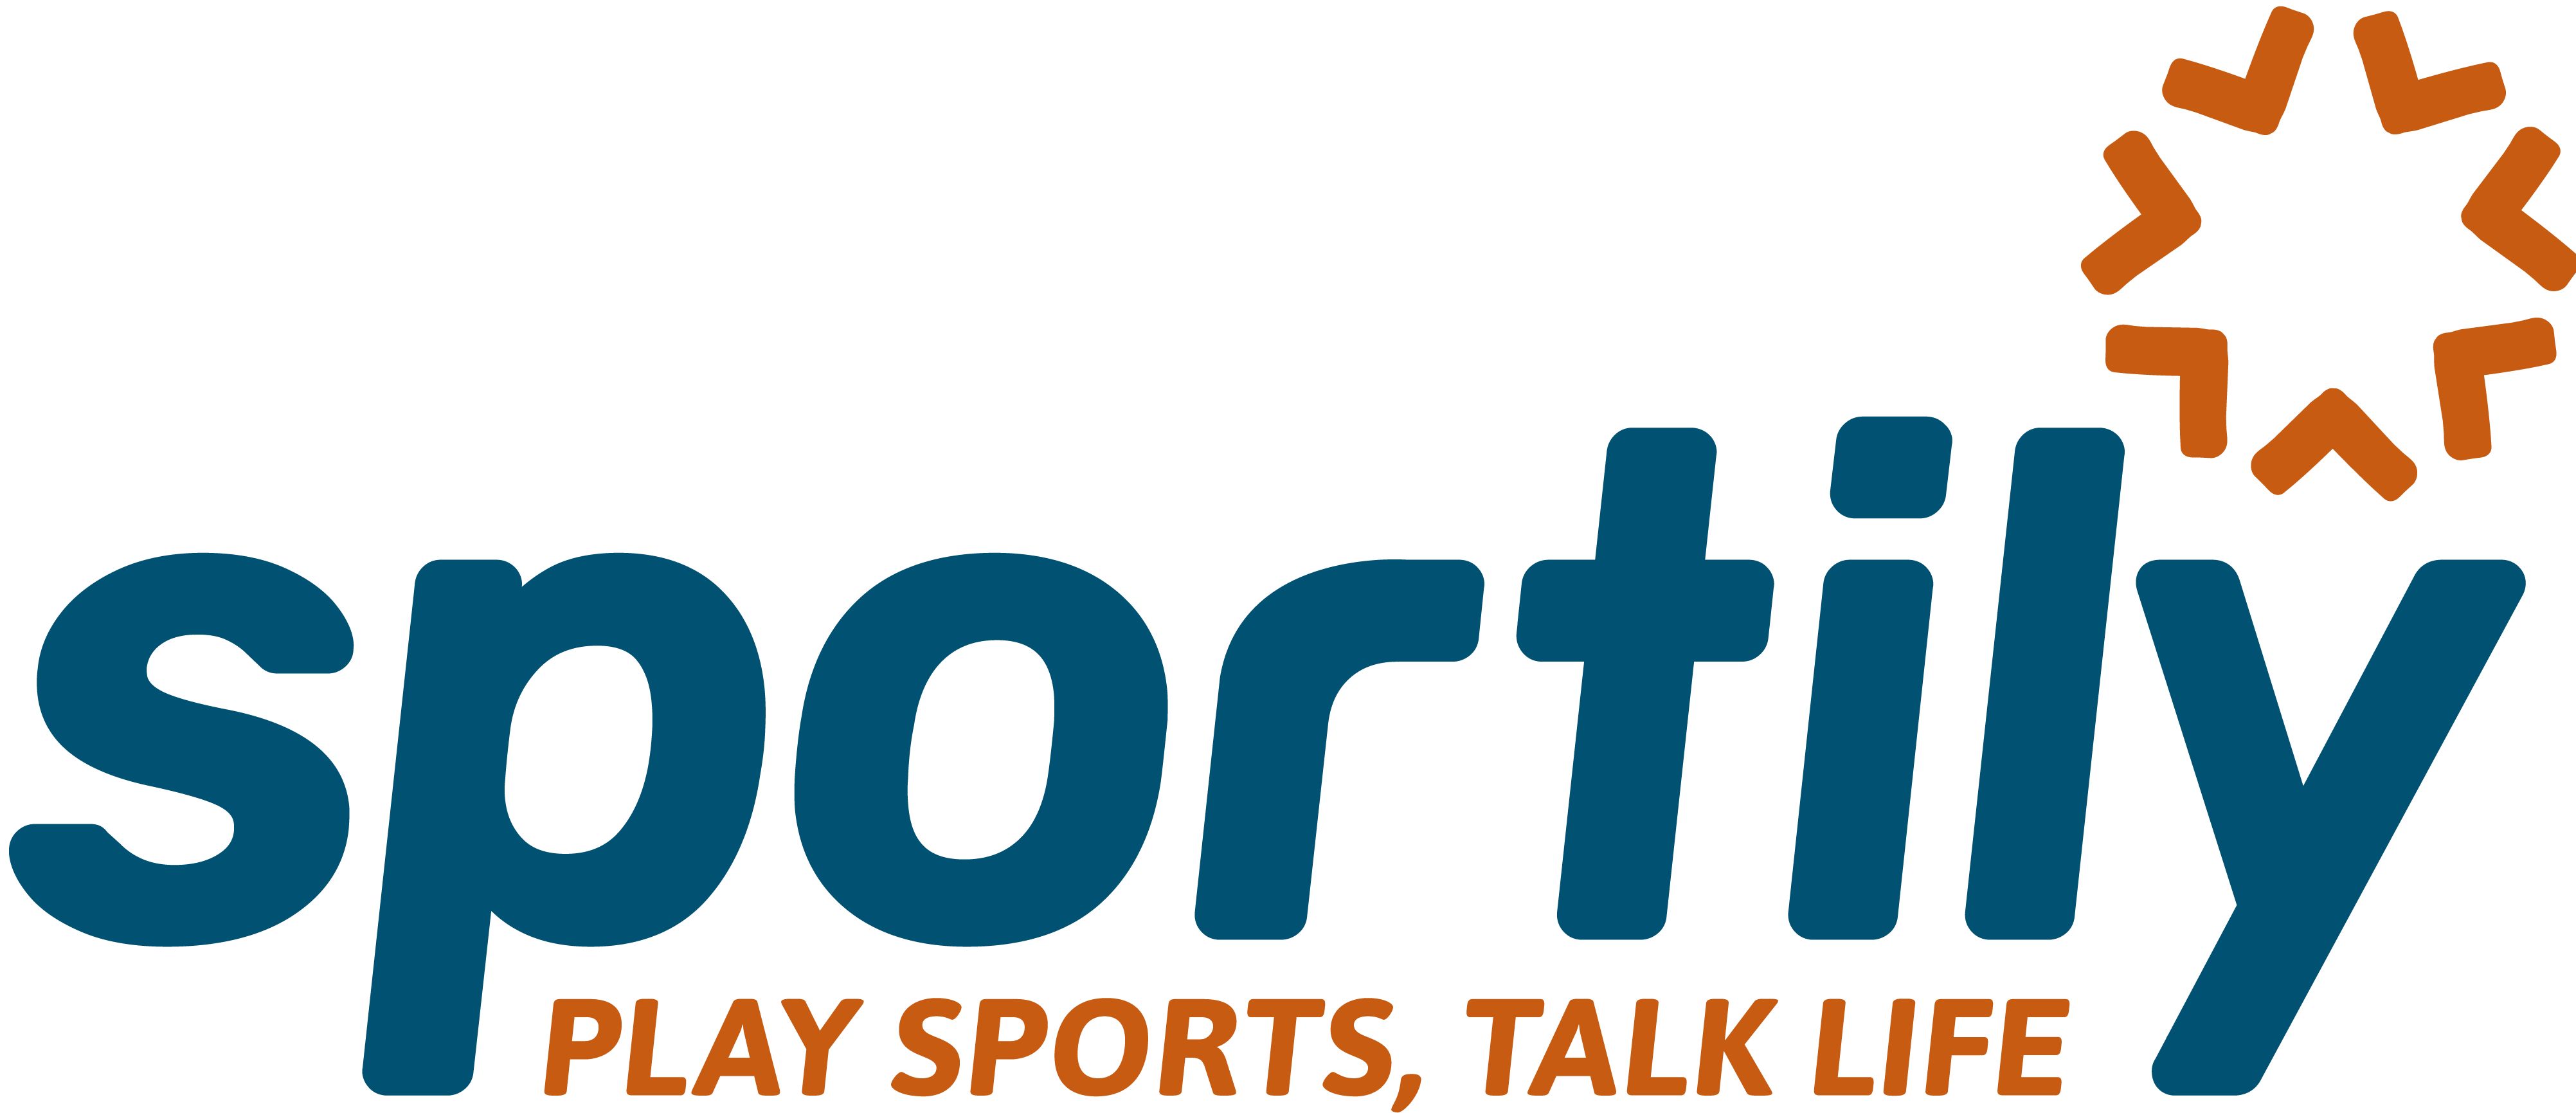 logo for Sportily